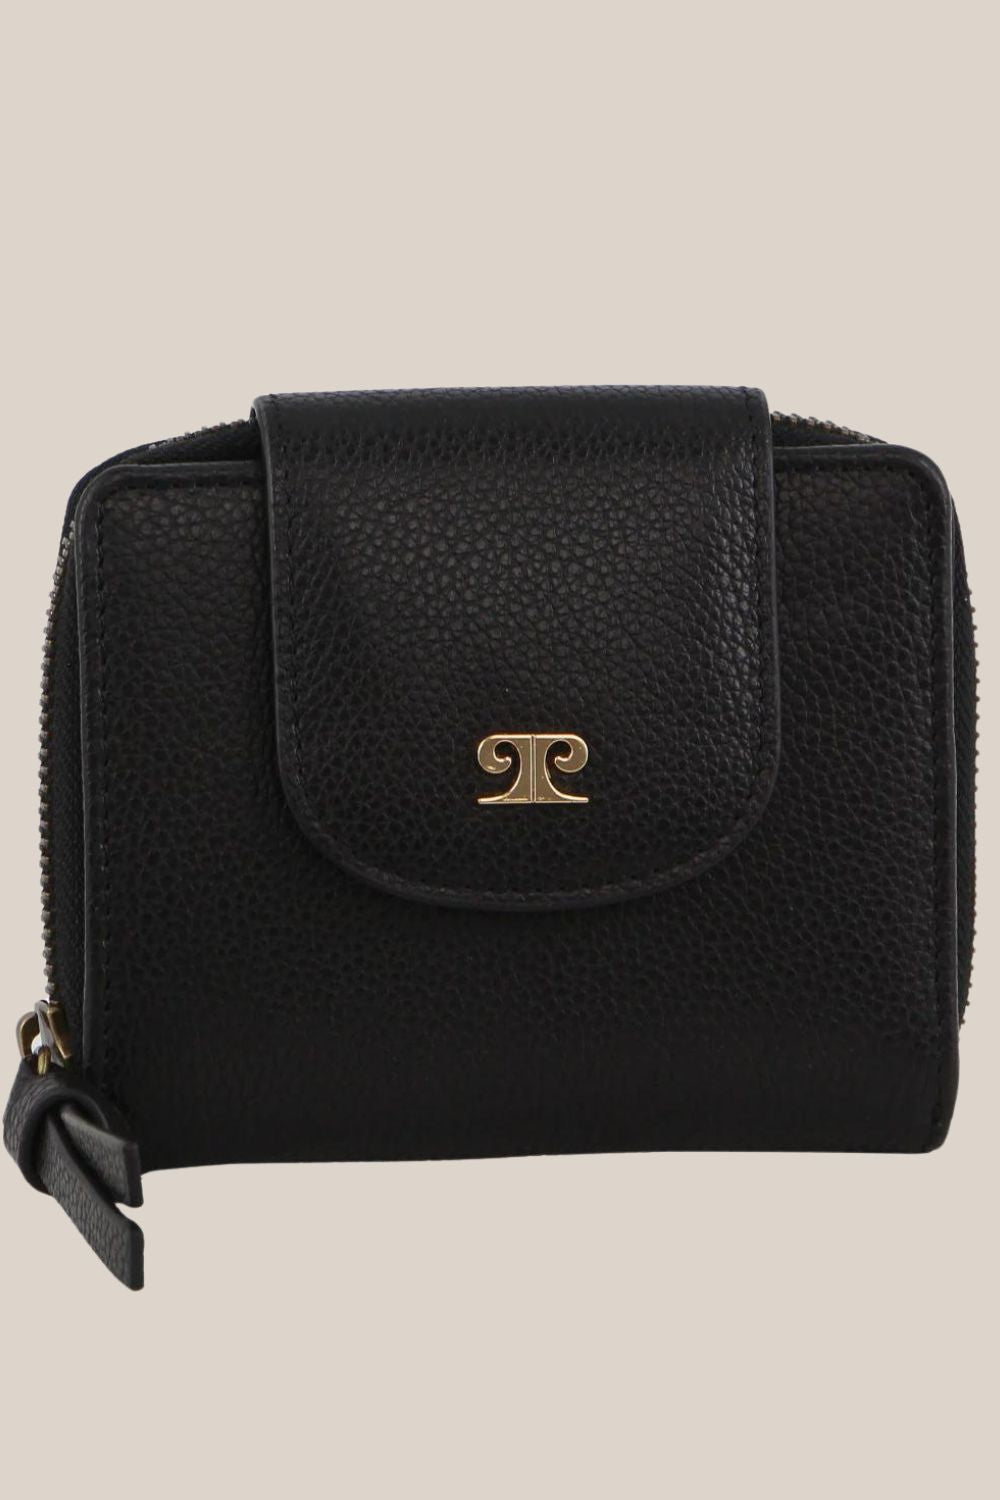 Pierre Cardin Leather Tab Bi-Fold Wallet